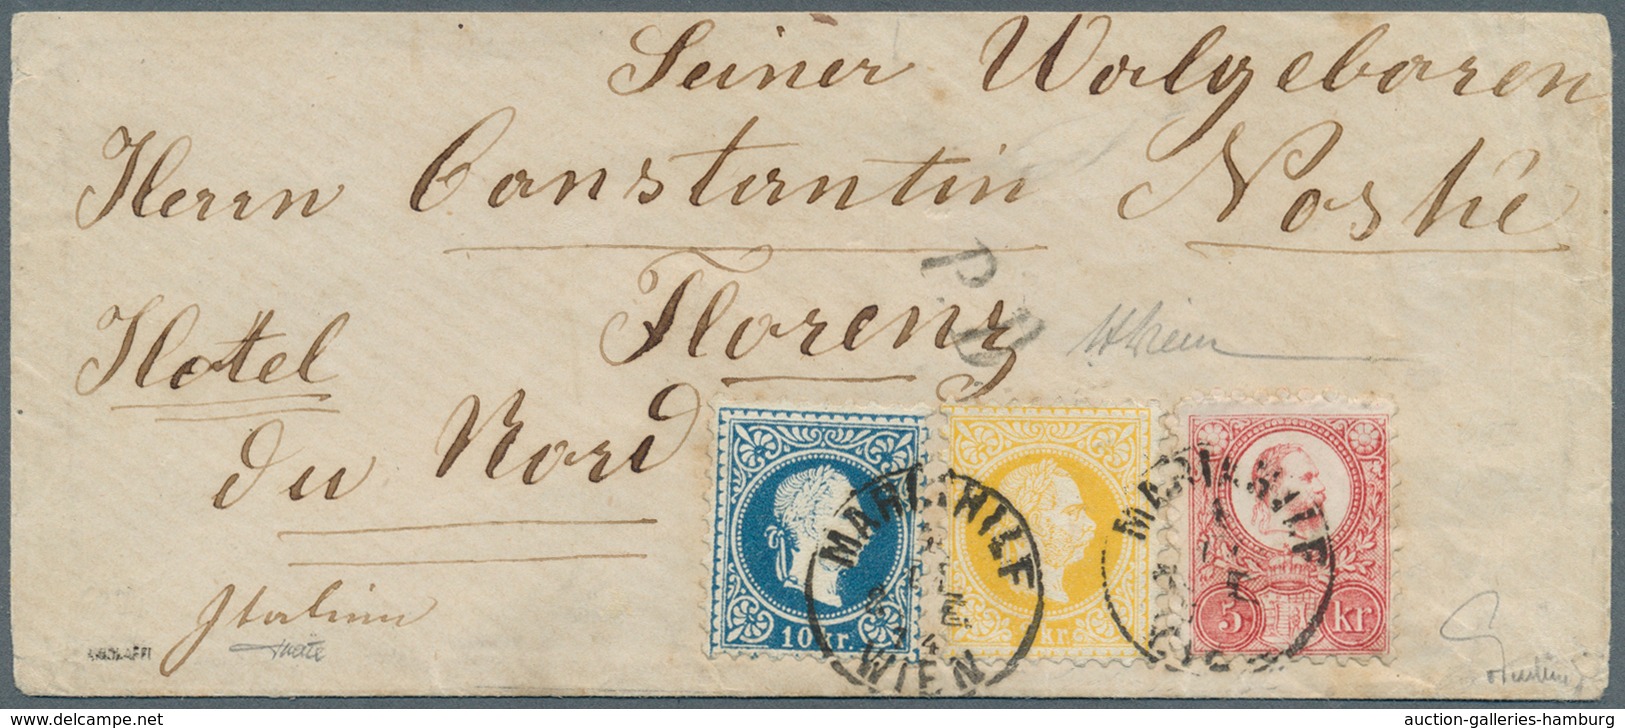 Österreich: 1867, 10 Kr. Dunkelblau Und 2 Kr. Gelb, Beide Grober Druck, Und Ungarn Freimarken-Ausgab - Ungebraucht